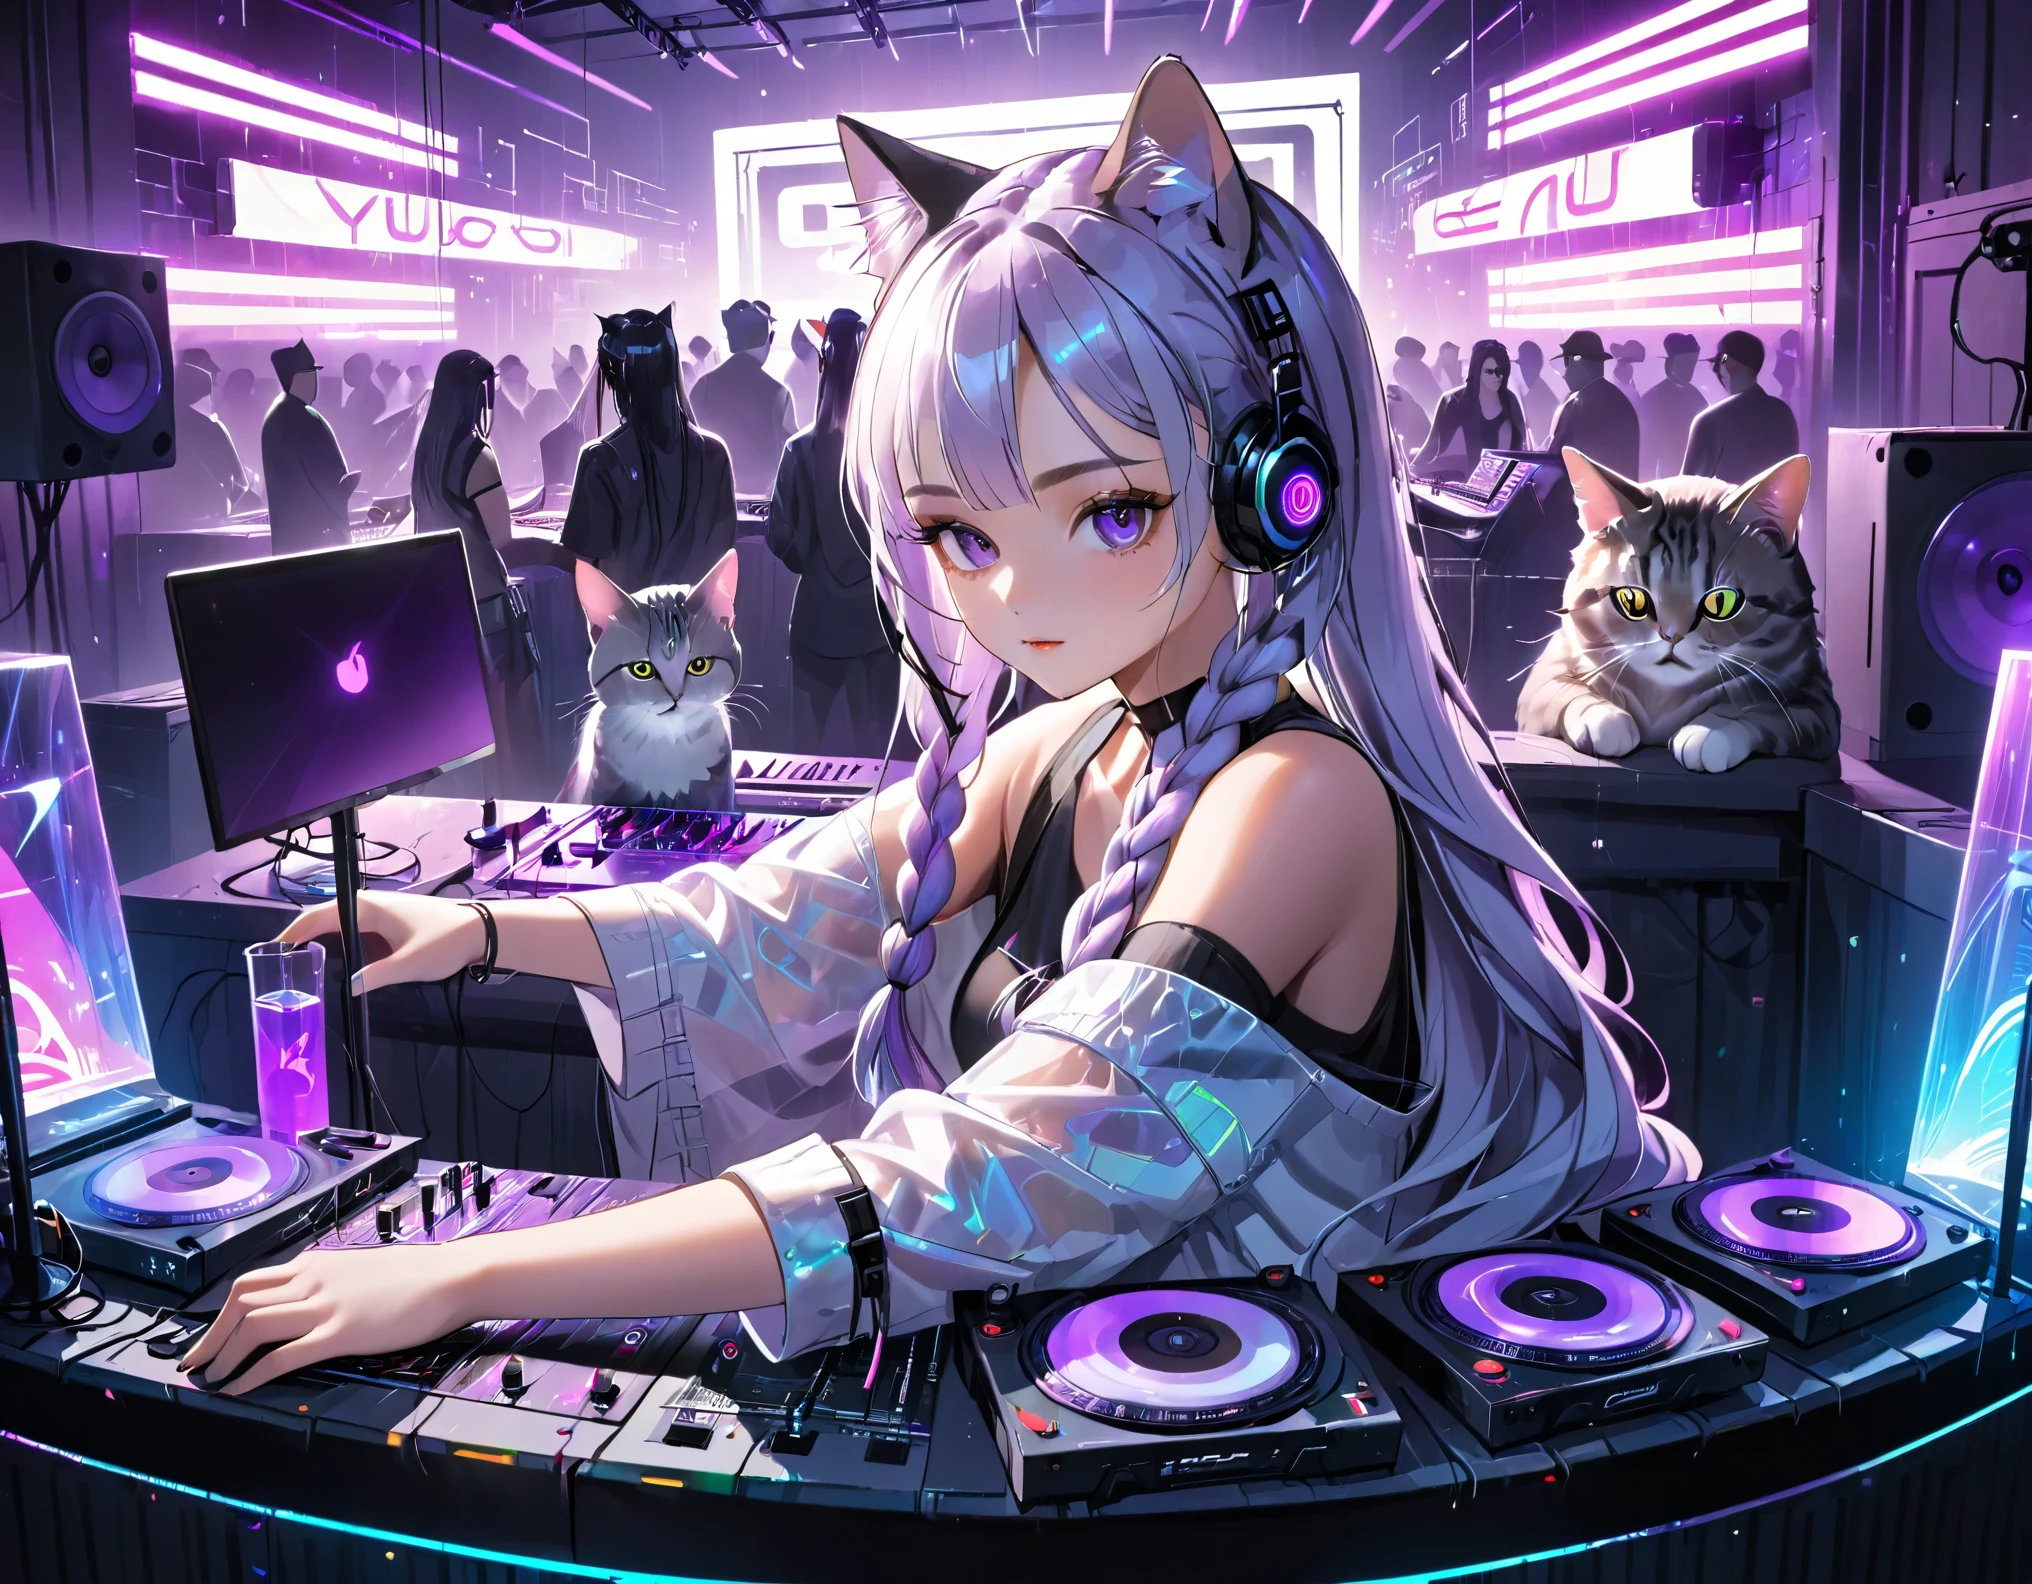 Garota discotecando em um clube, ciberpunk, Cabelo longo trançado gradiente branco-roxo com luzes cintilantes, gato transparente com holografia neon sentado ao lado de equipamento de DJ.